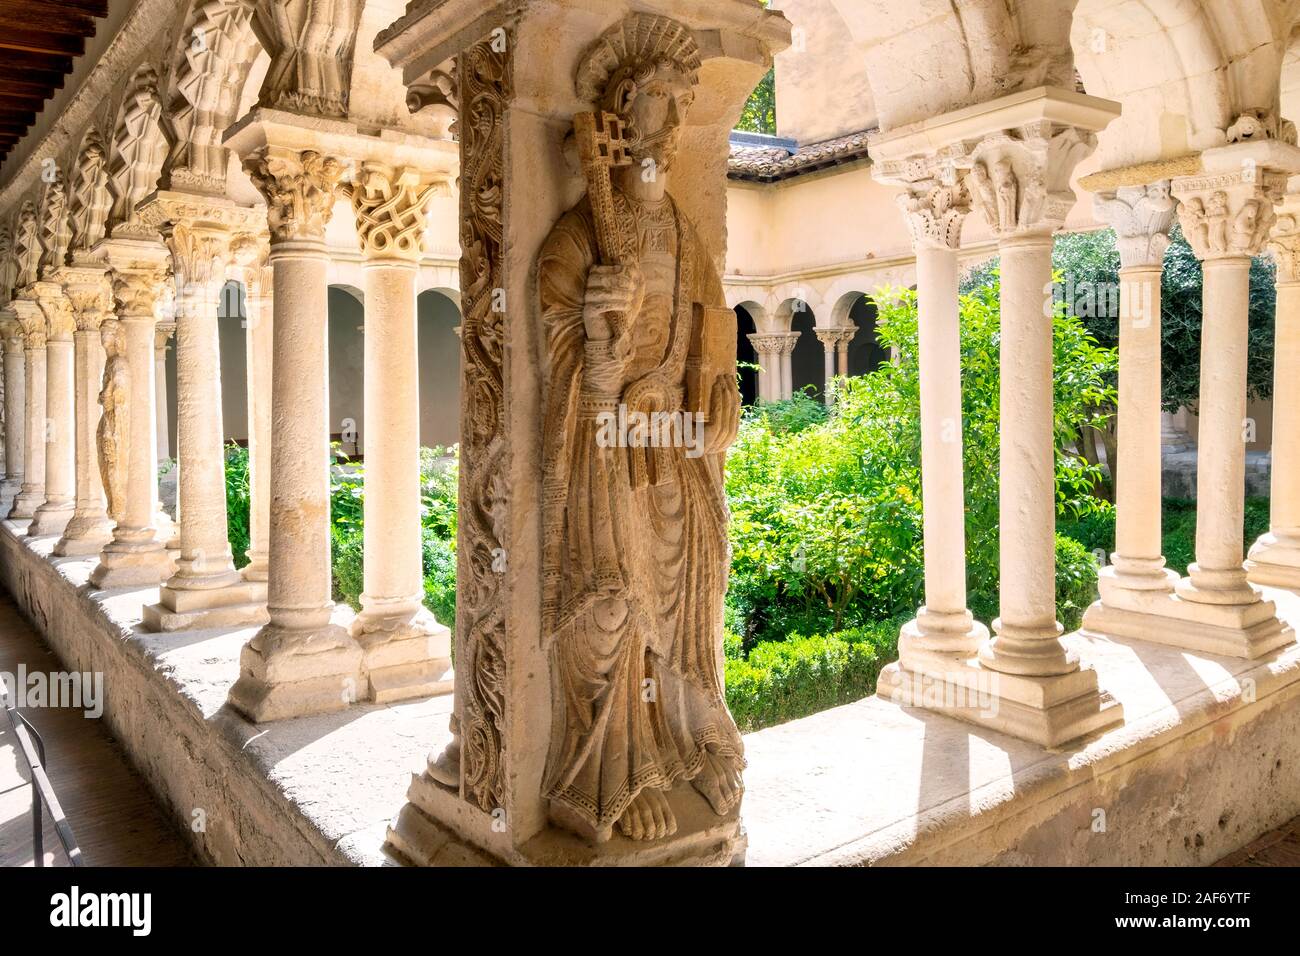 Statua di San Pietro nel chiostro della Cattedrale di Aix / Cathédrale Saint-Sauveur, Aix-en-Provence, Francia Foto Stock